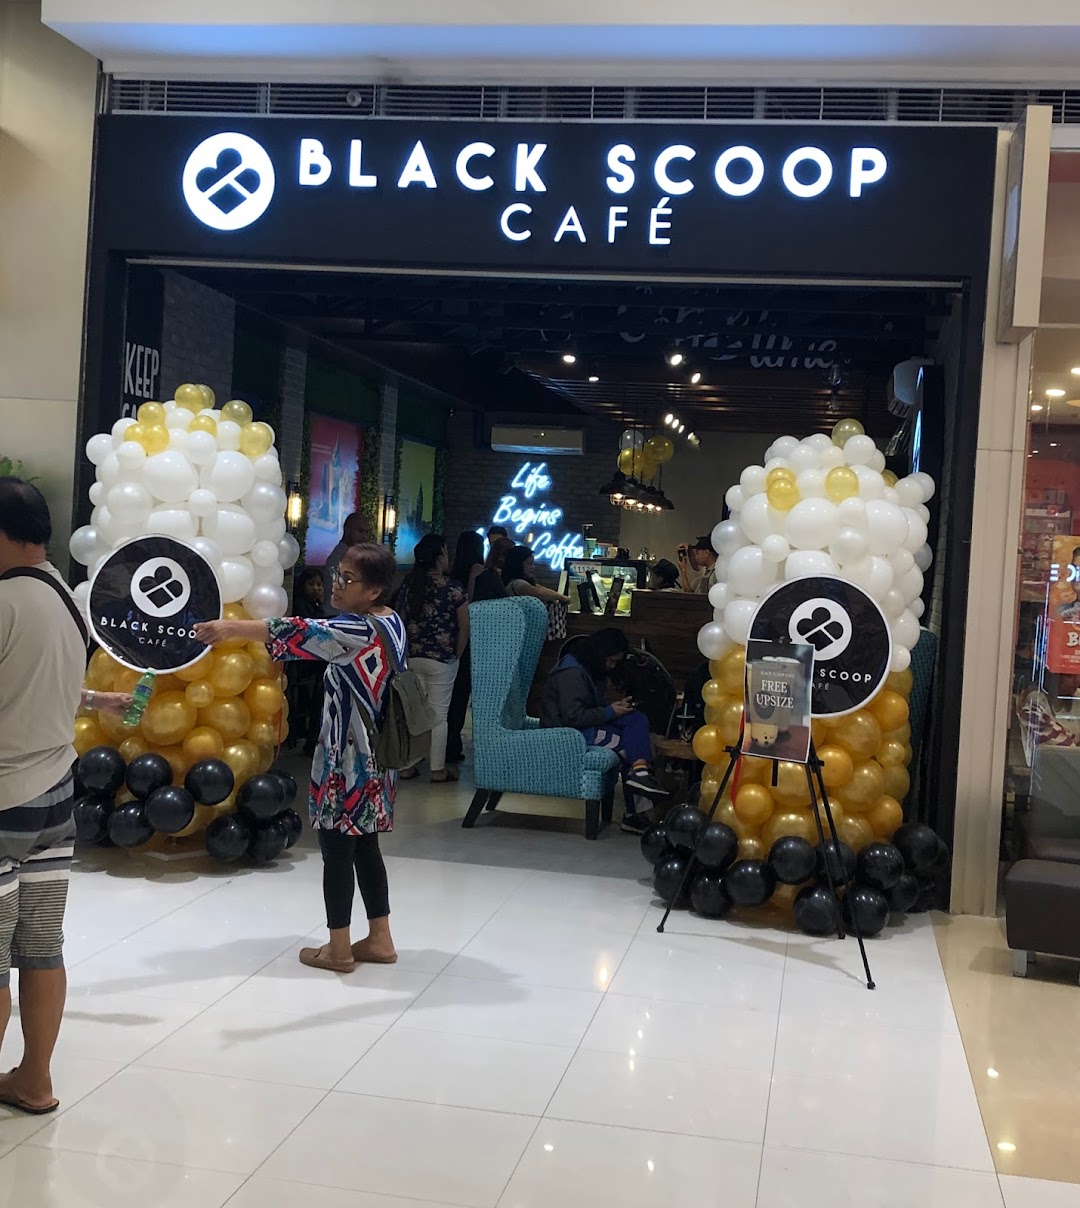 Black scoop cafe